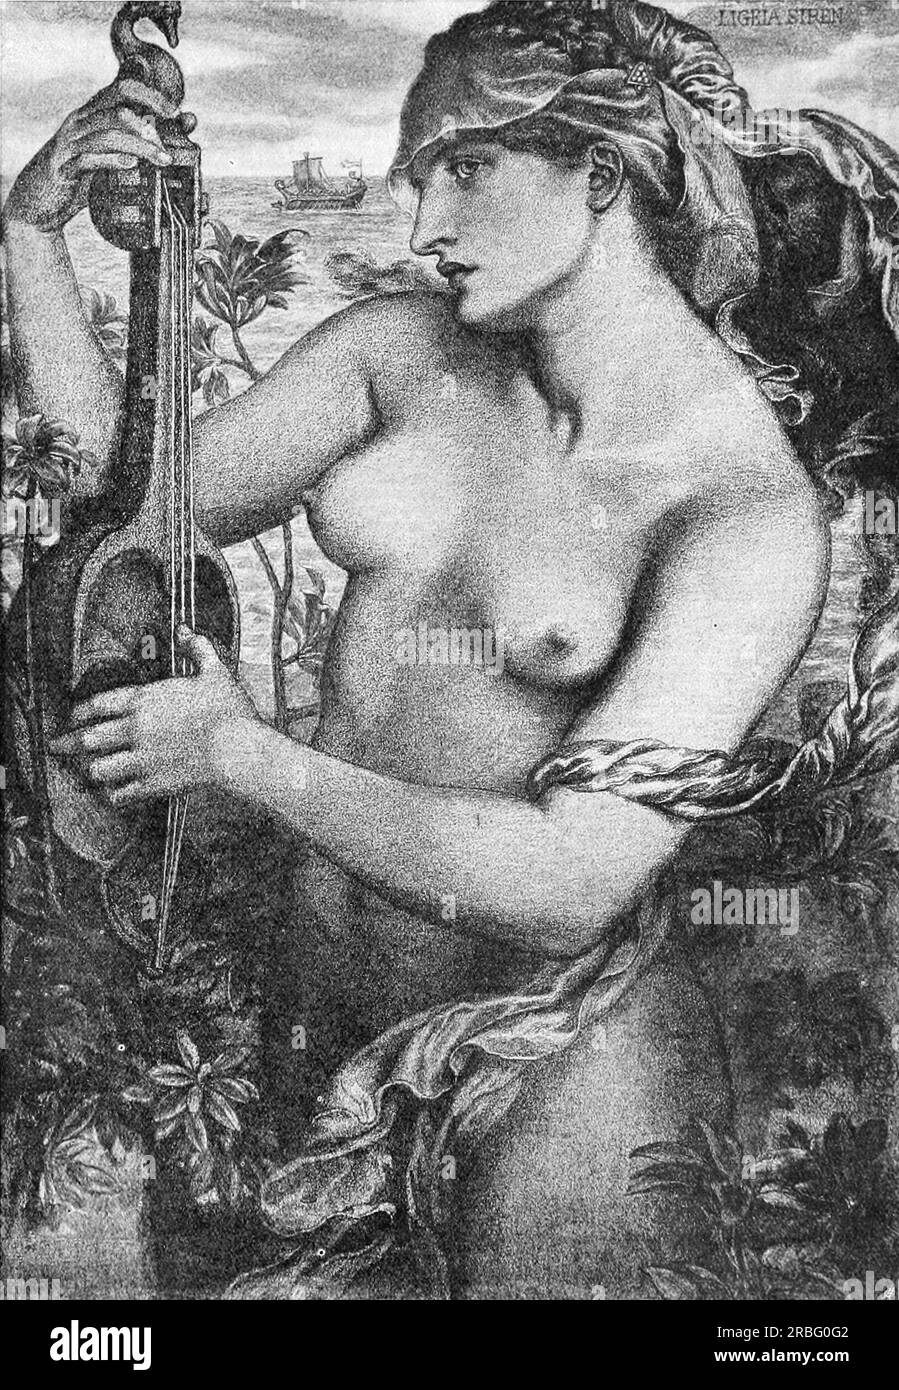 Ligeia Siren 1873 by Dante Gabriel Rossetti Stock Photo